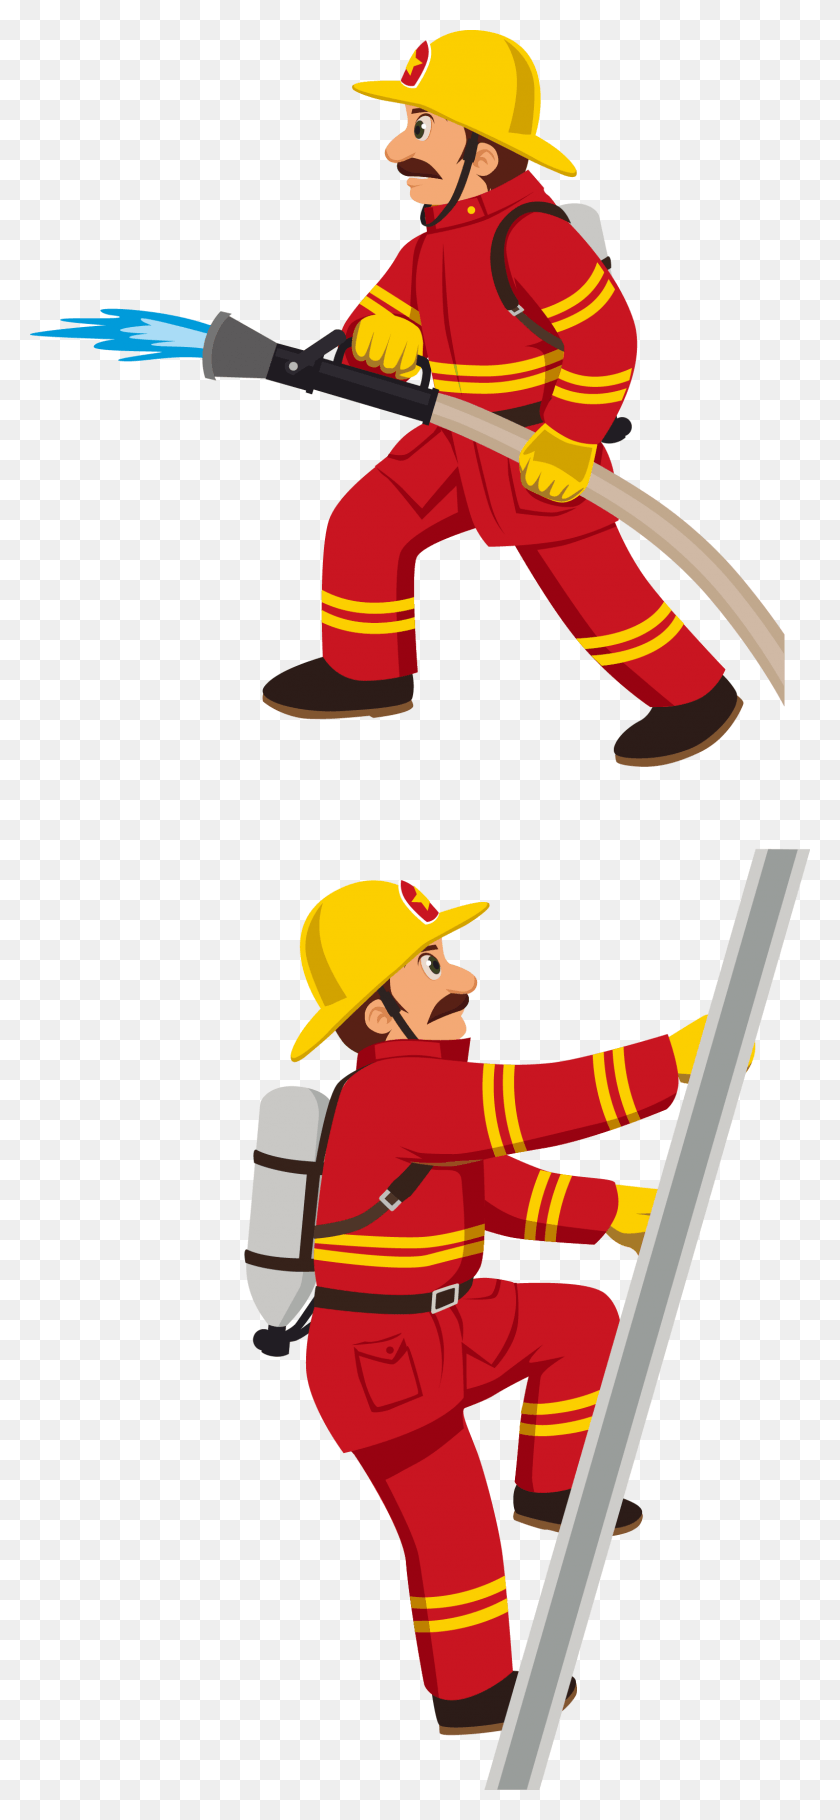 1523x3437 Пожарный Пожарная Служба Пожарная Машина Стоковая Фотография Пожаротушение Клипарт, Пожарный, Человек, Человек Hd Png Скачать